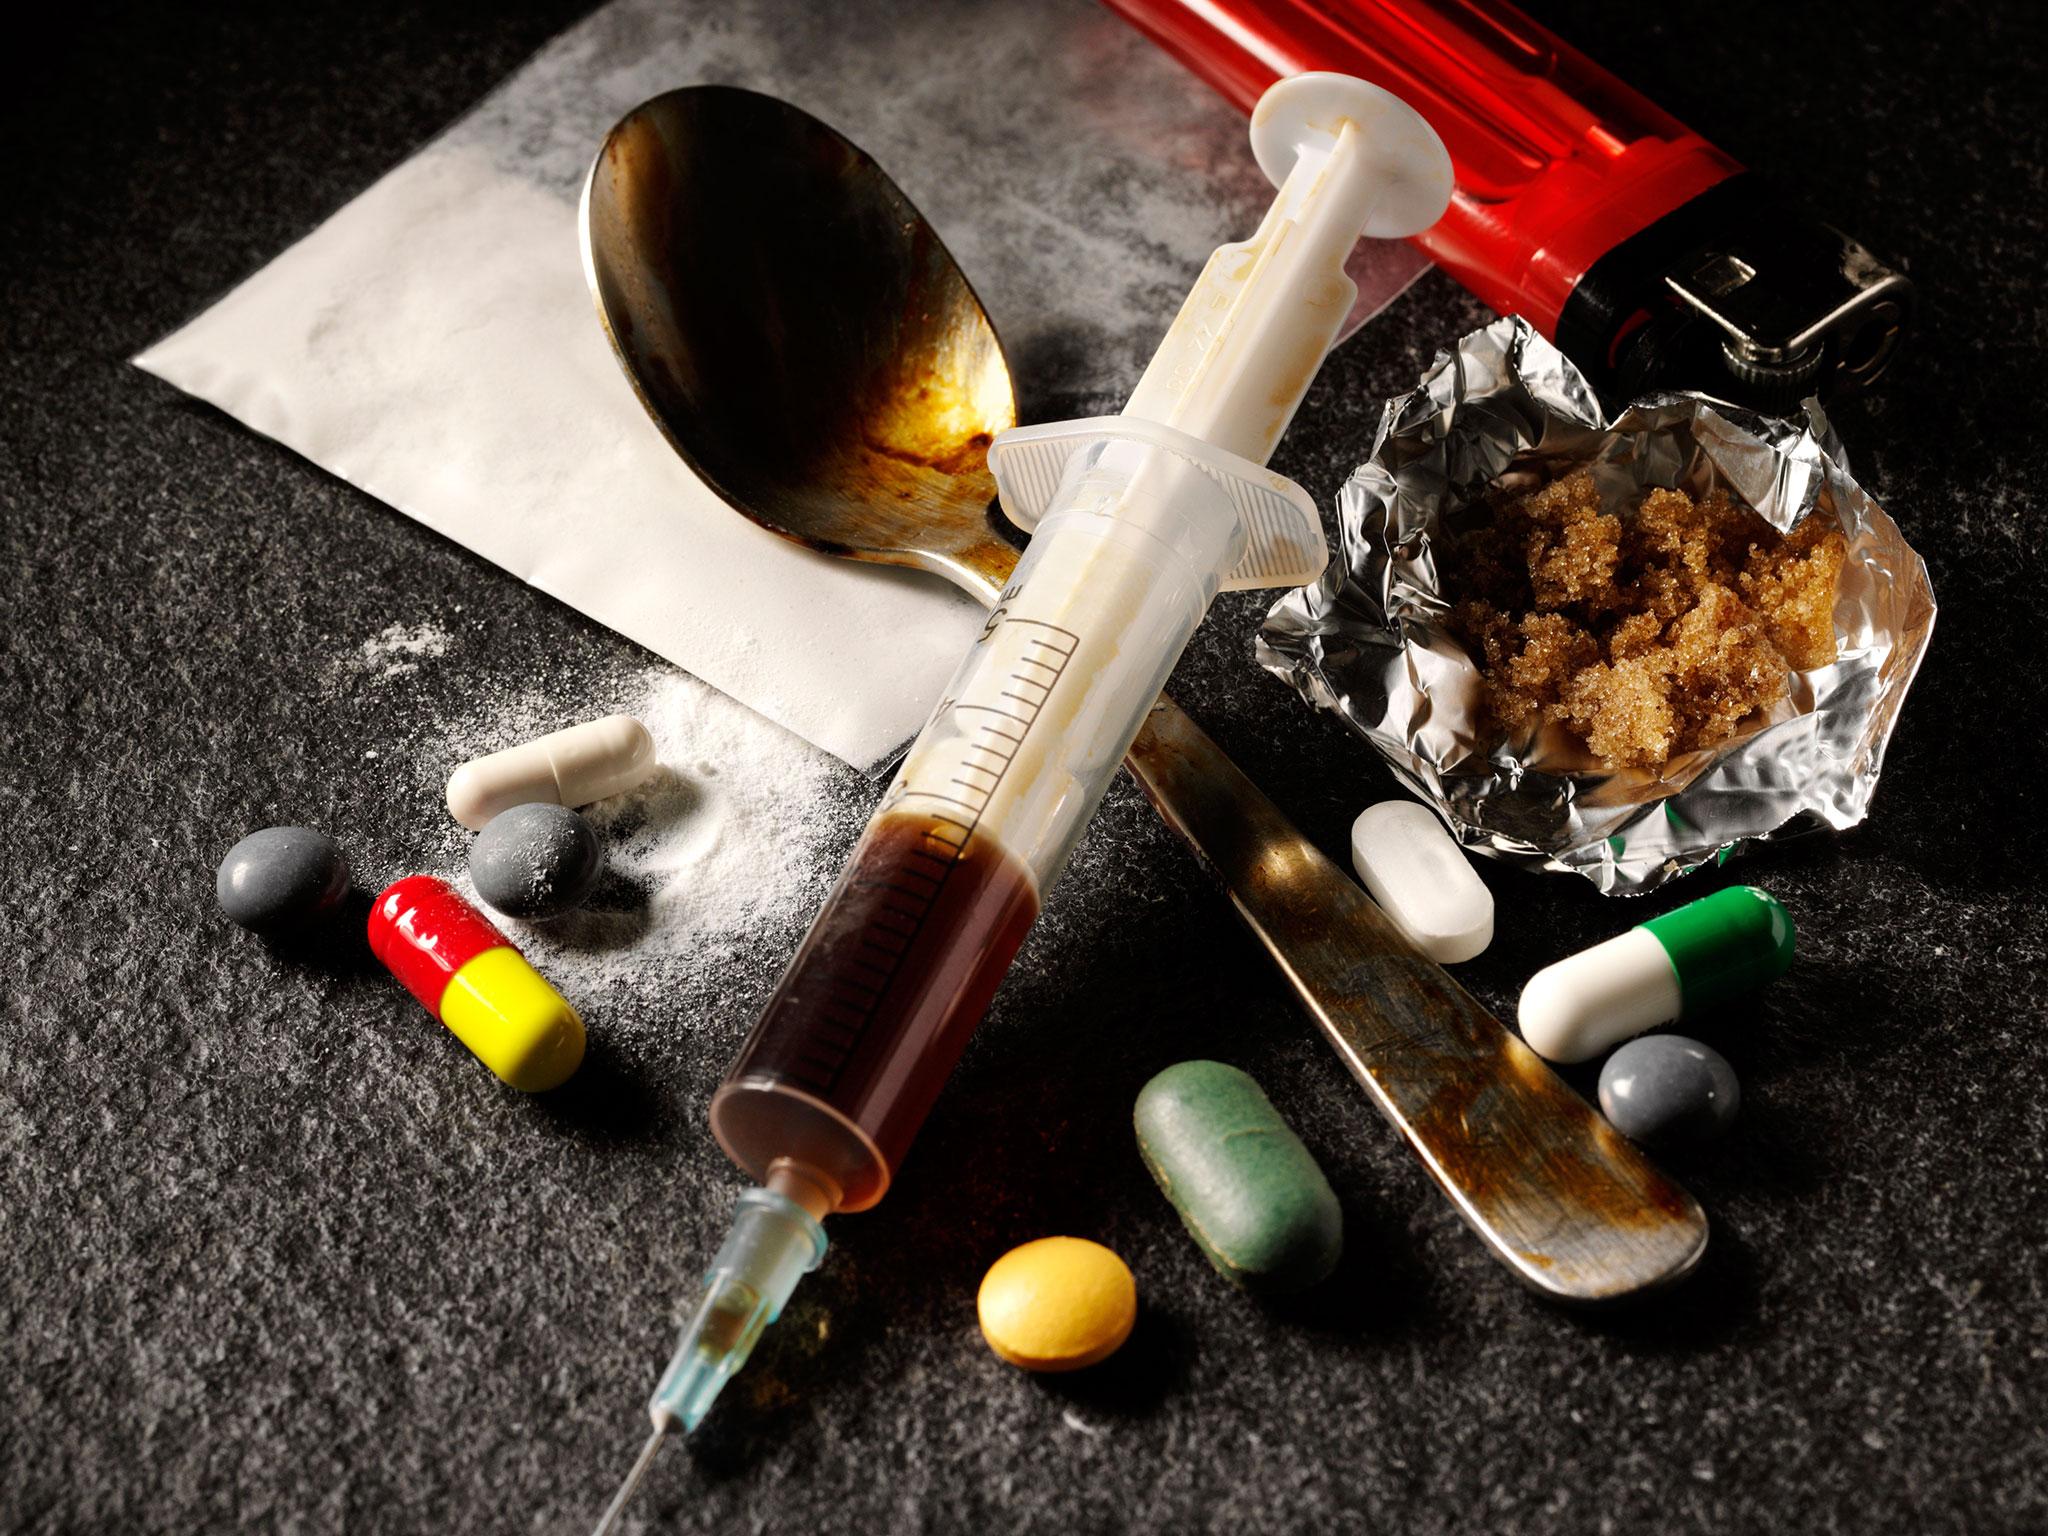 Картинки с наркотиками скачать наркотики соли последствия употребления